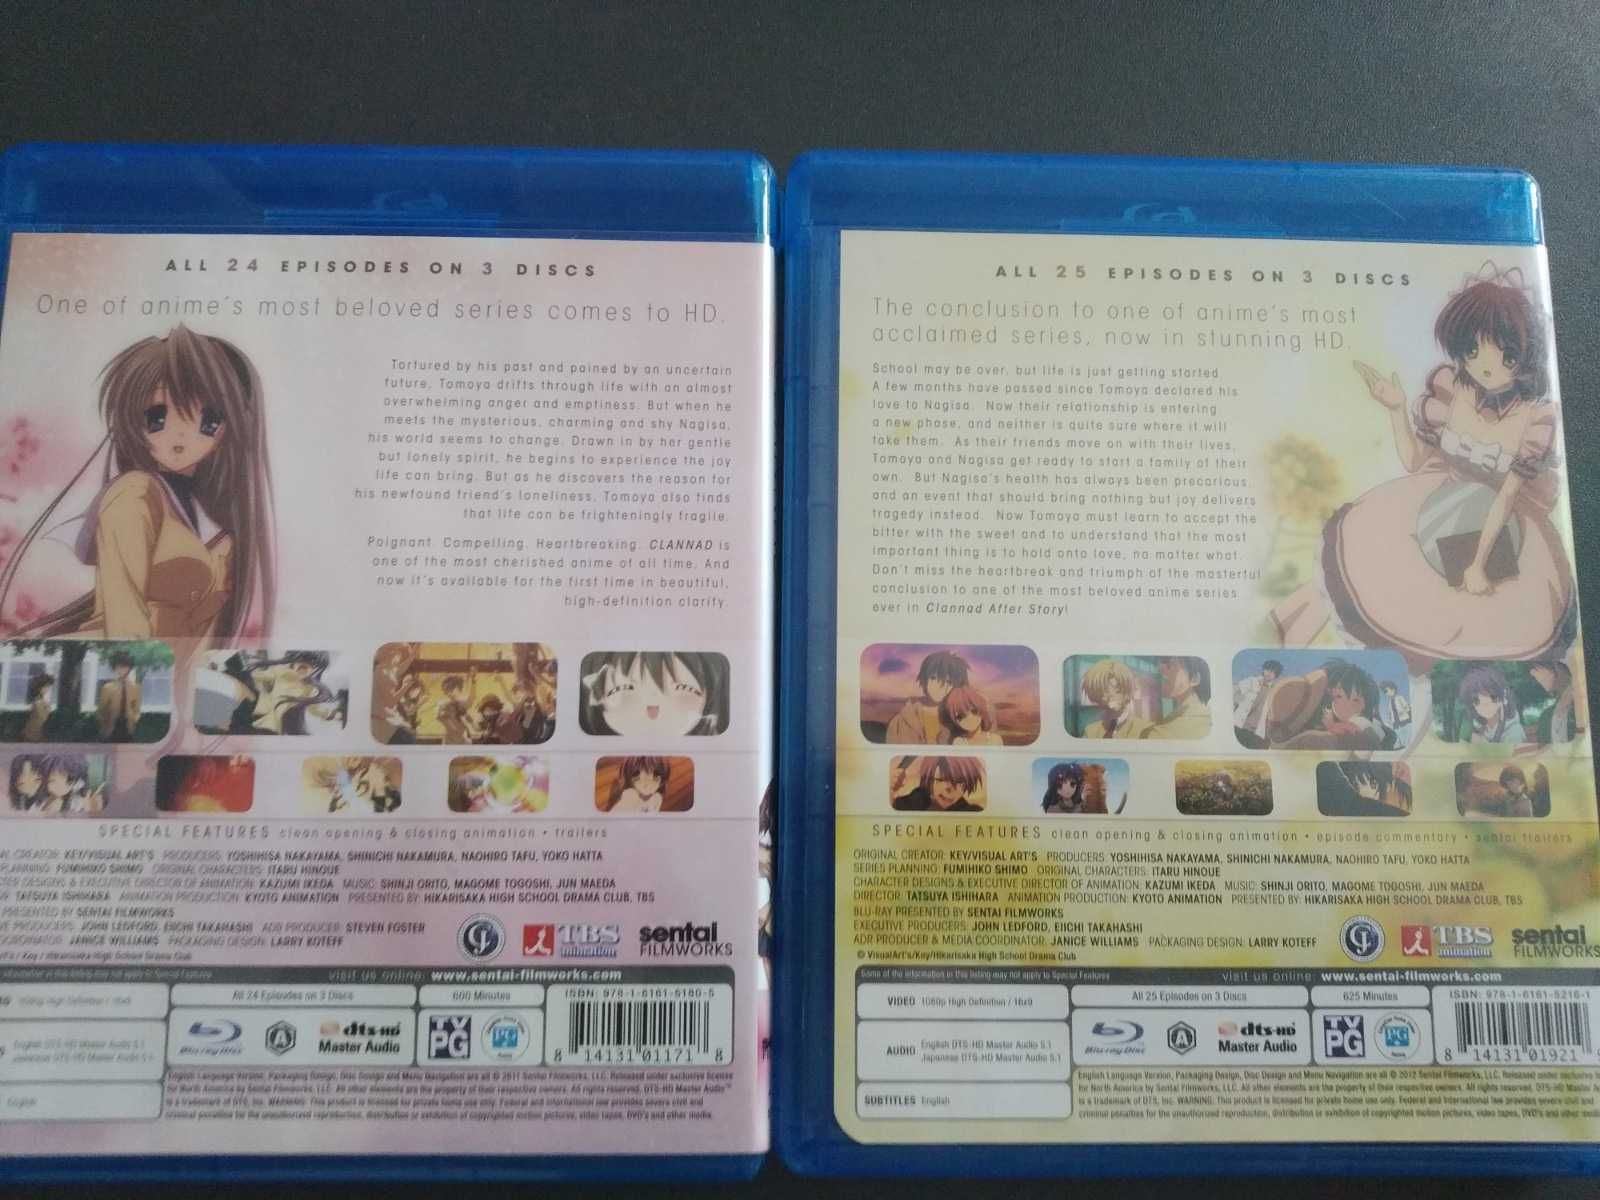 Clannad Blu-ray